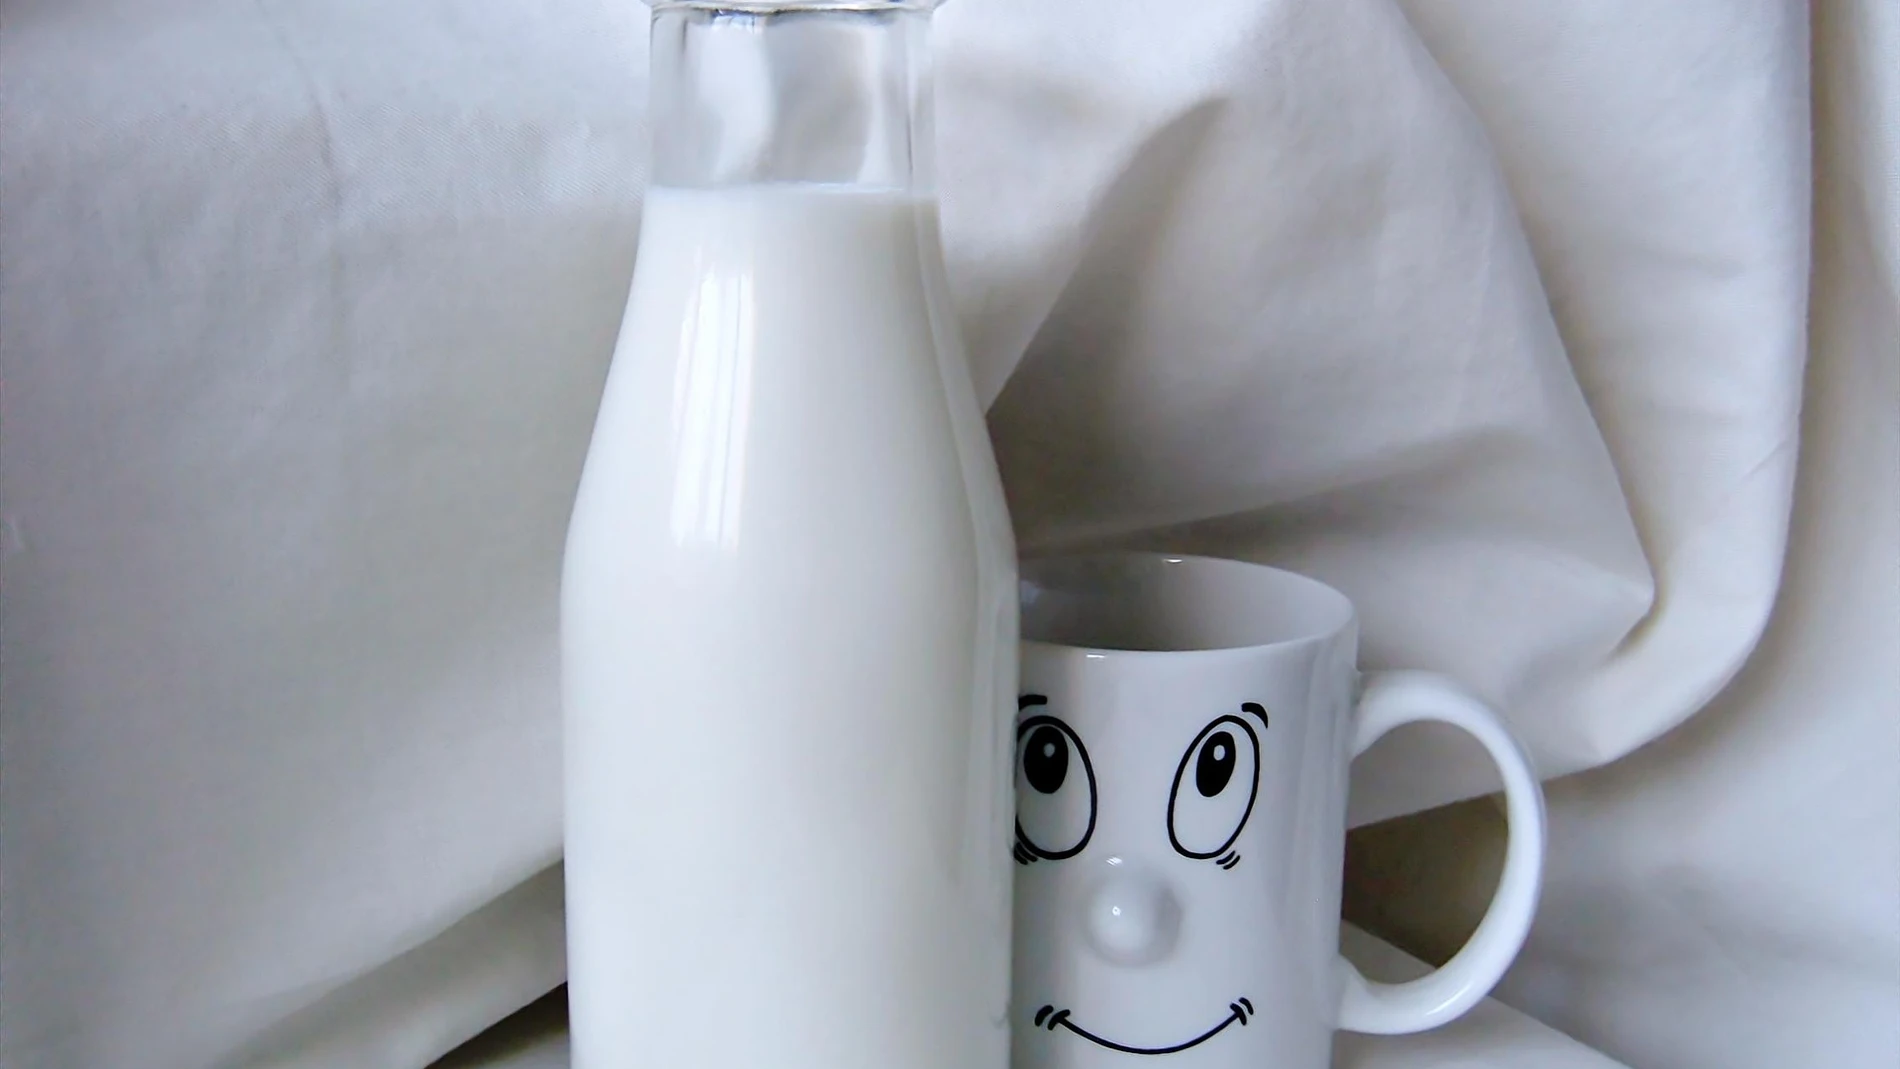 Una botella de leche